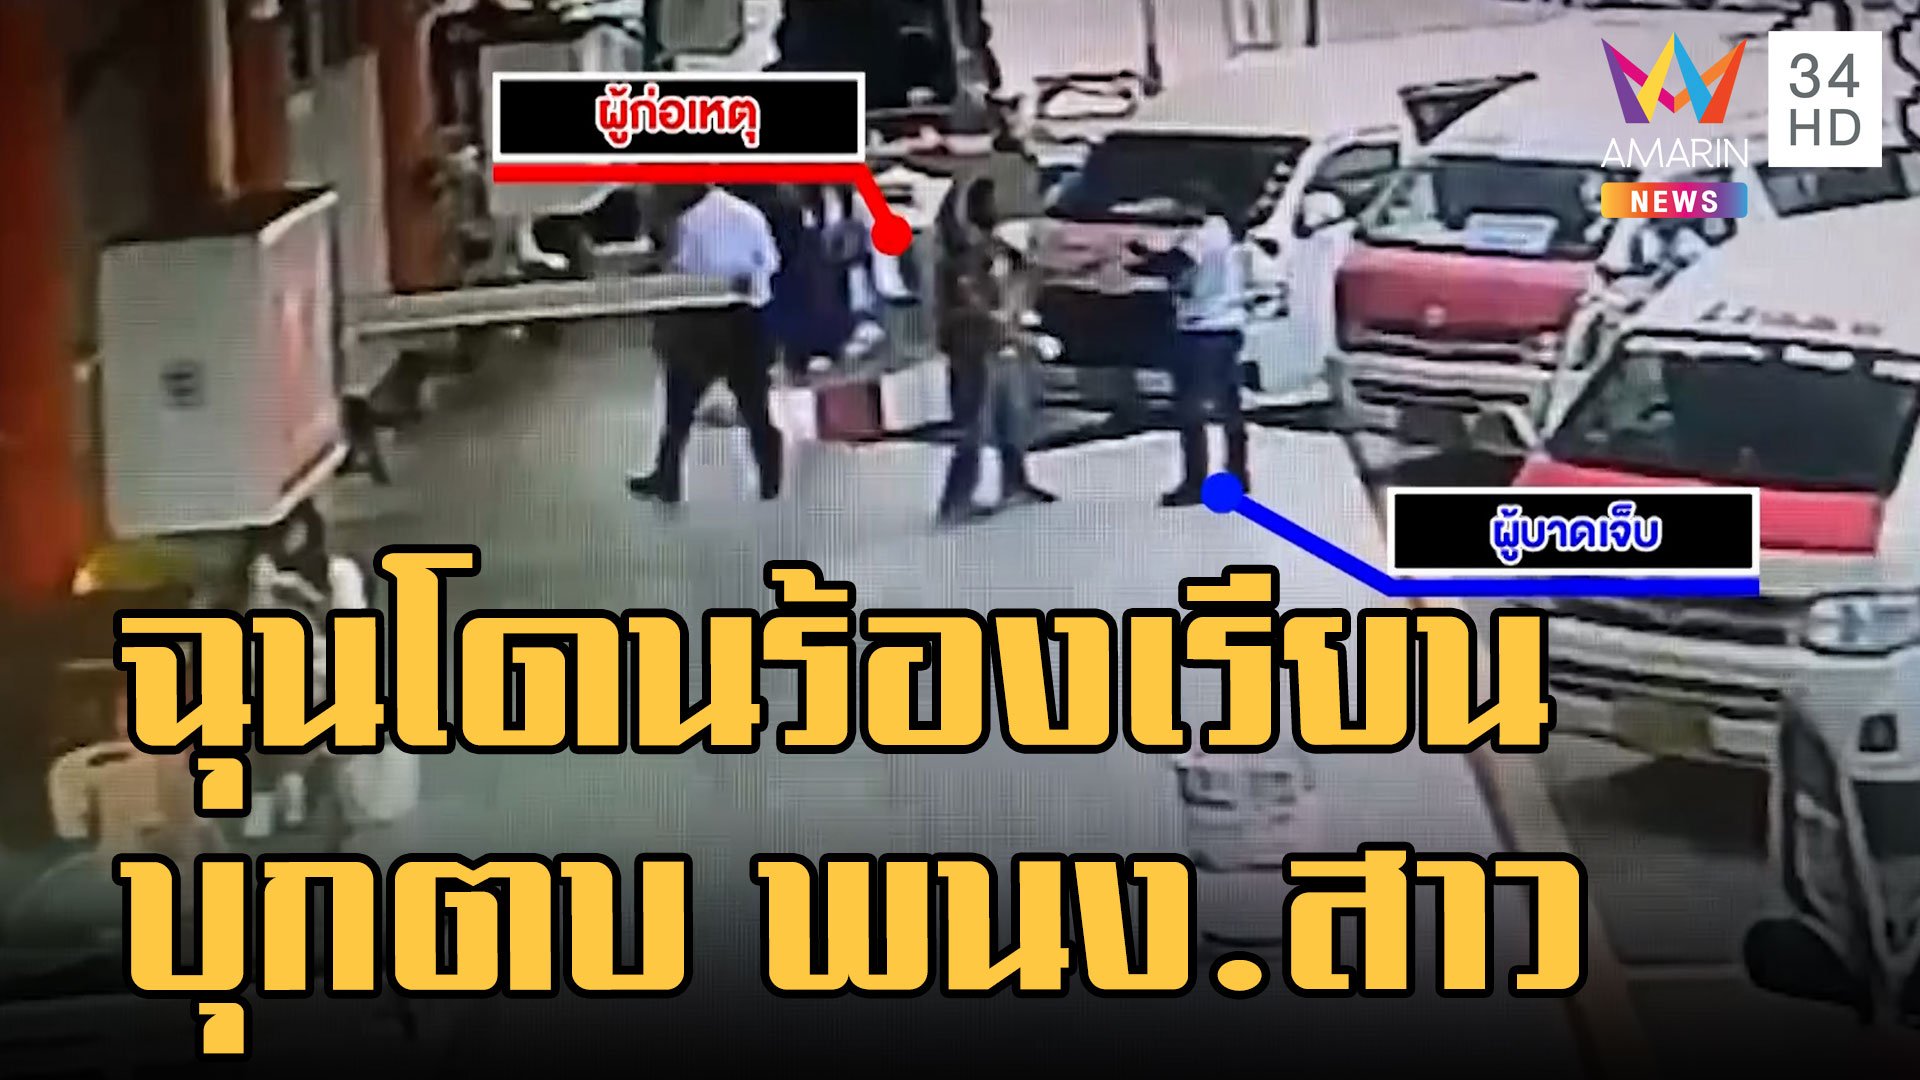 ชายบุกตบพนักงานสาว ฉุนเตือนเรื่องจอดรถวินรถตู้สายใต้เก่า  | ข่าวเที่ยงอมรินทร์ | 23 ส.ค. 65 | AMARIN TVHD34